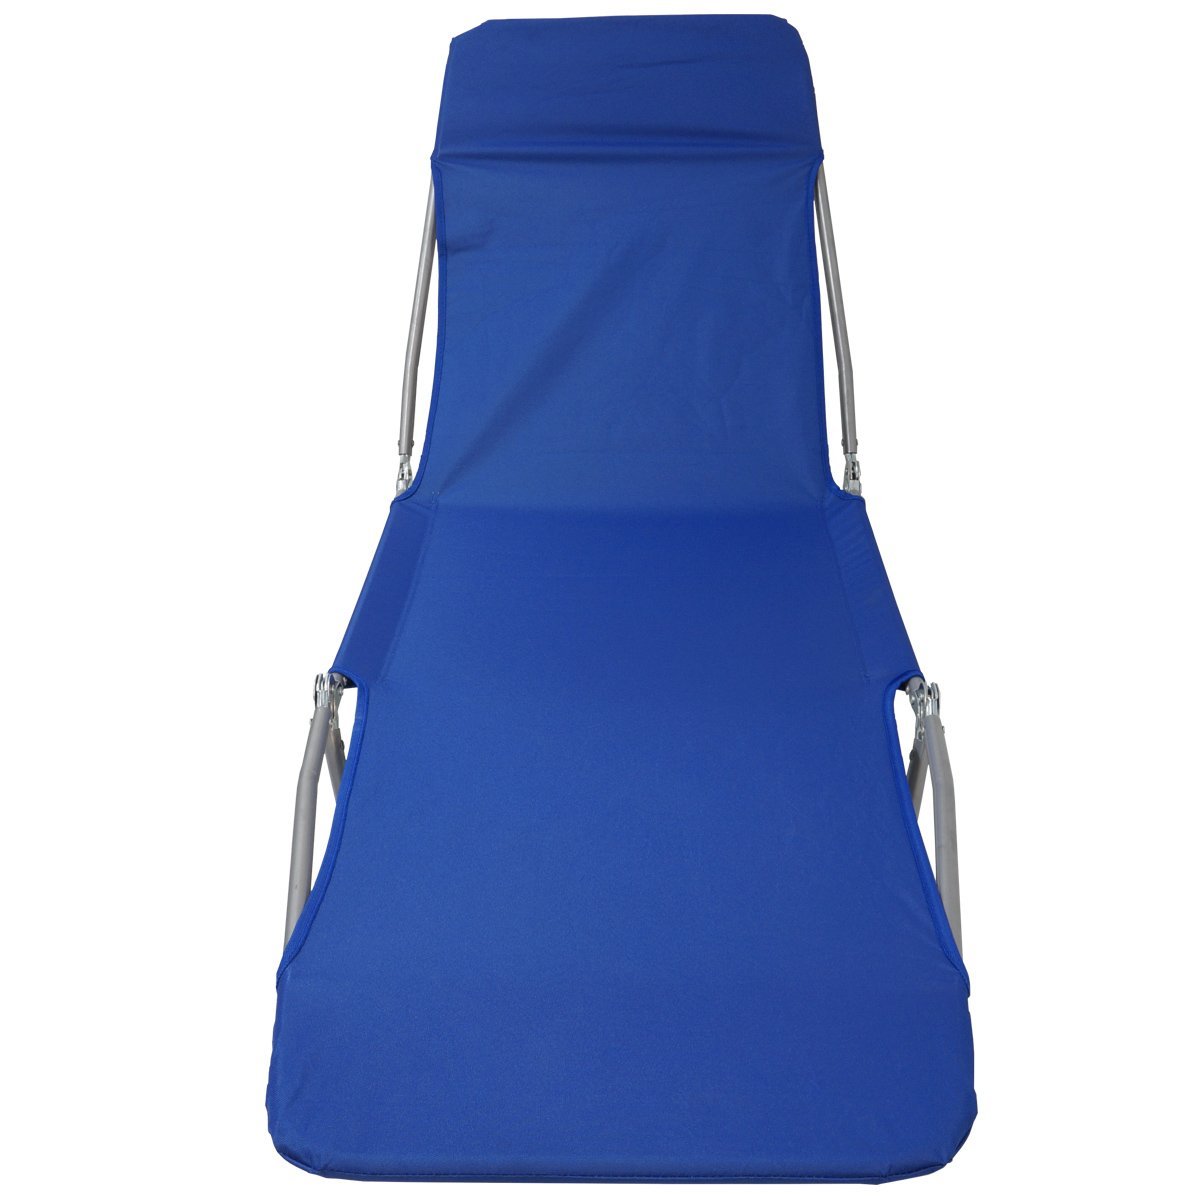 Cadeira Espreguiçadeira Dobrável 5 Posições Textline Praia Piscina Camping Importway IWCET-001 Azul  - 2